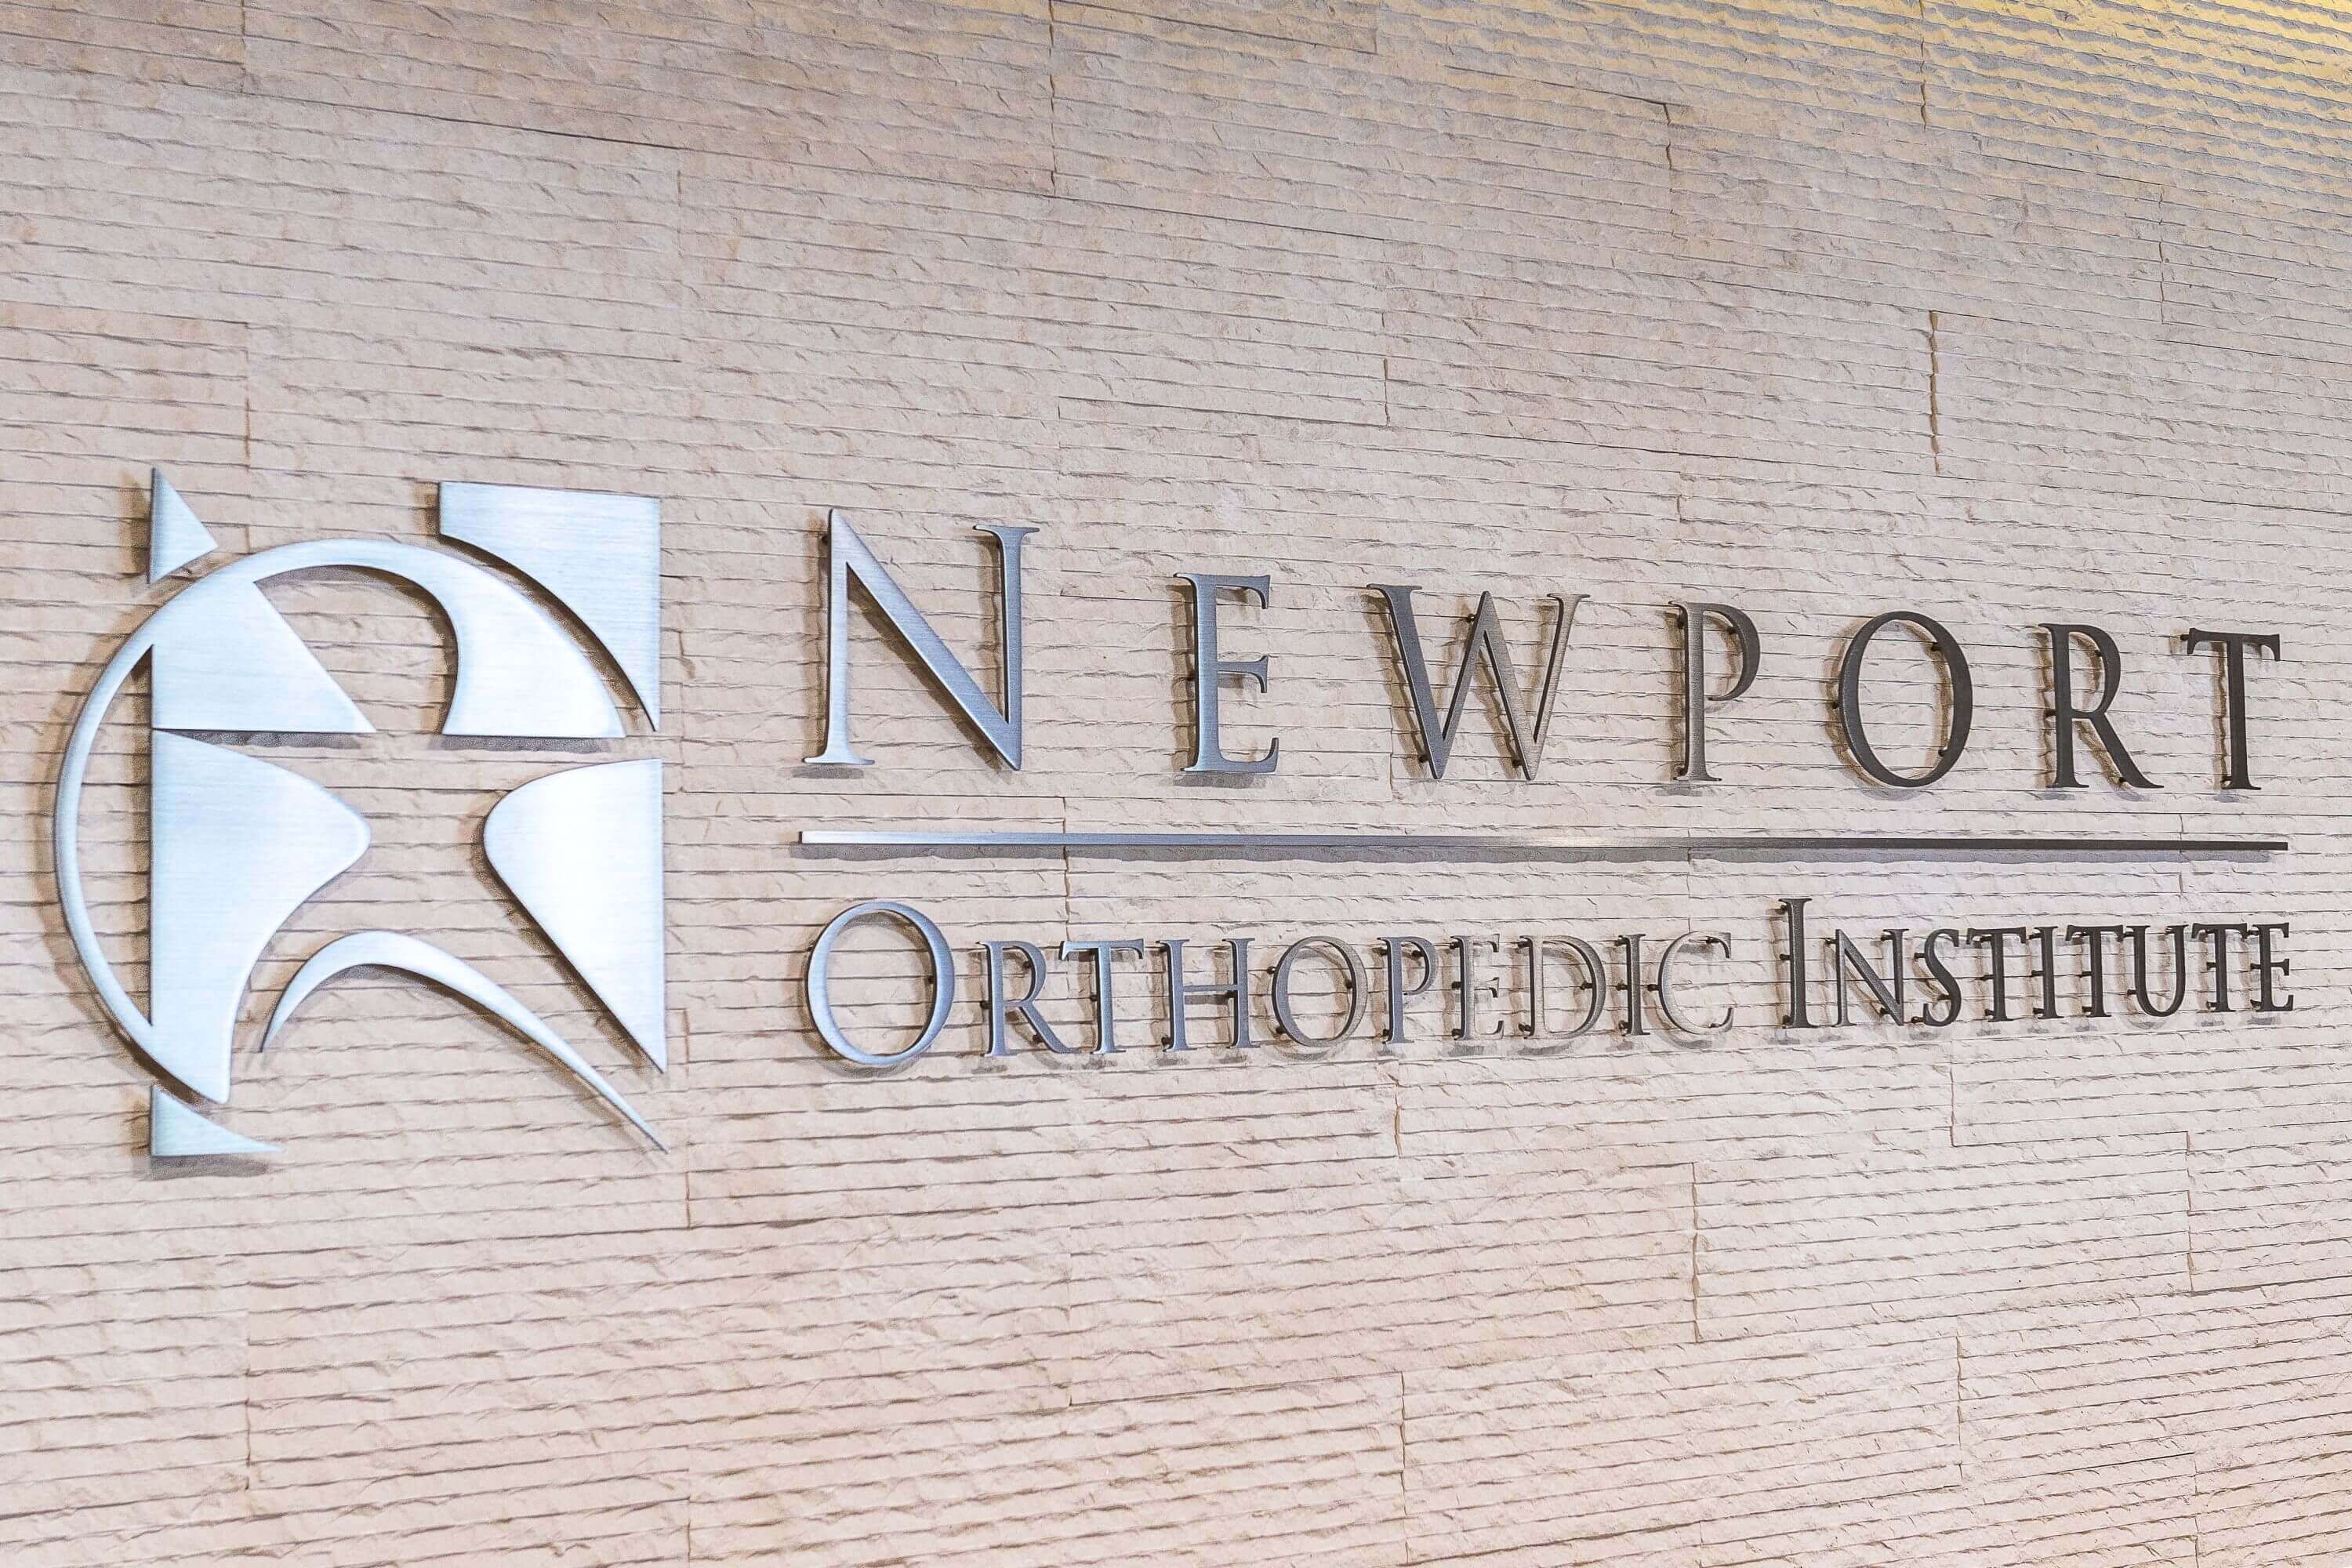 Newport Orthopedic Institute Sign